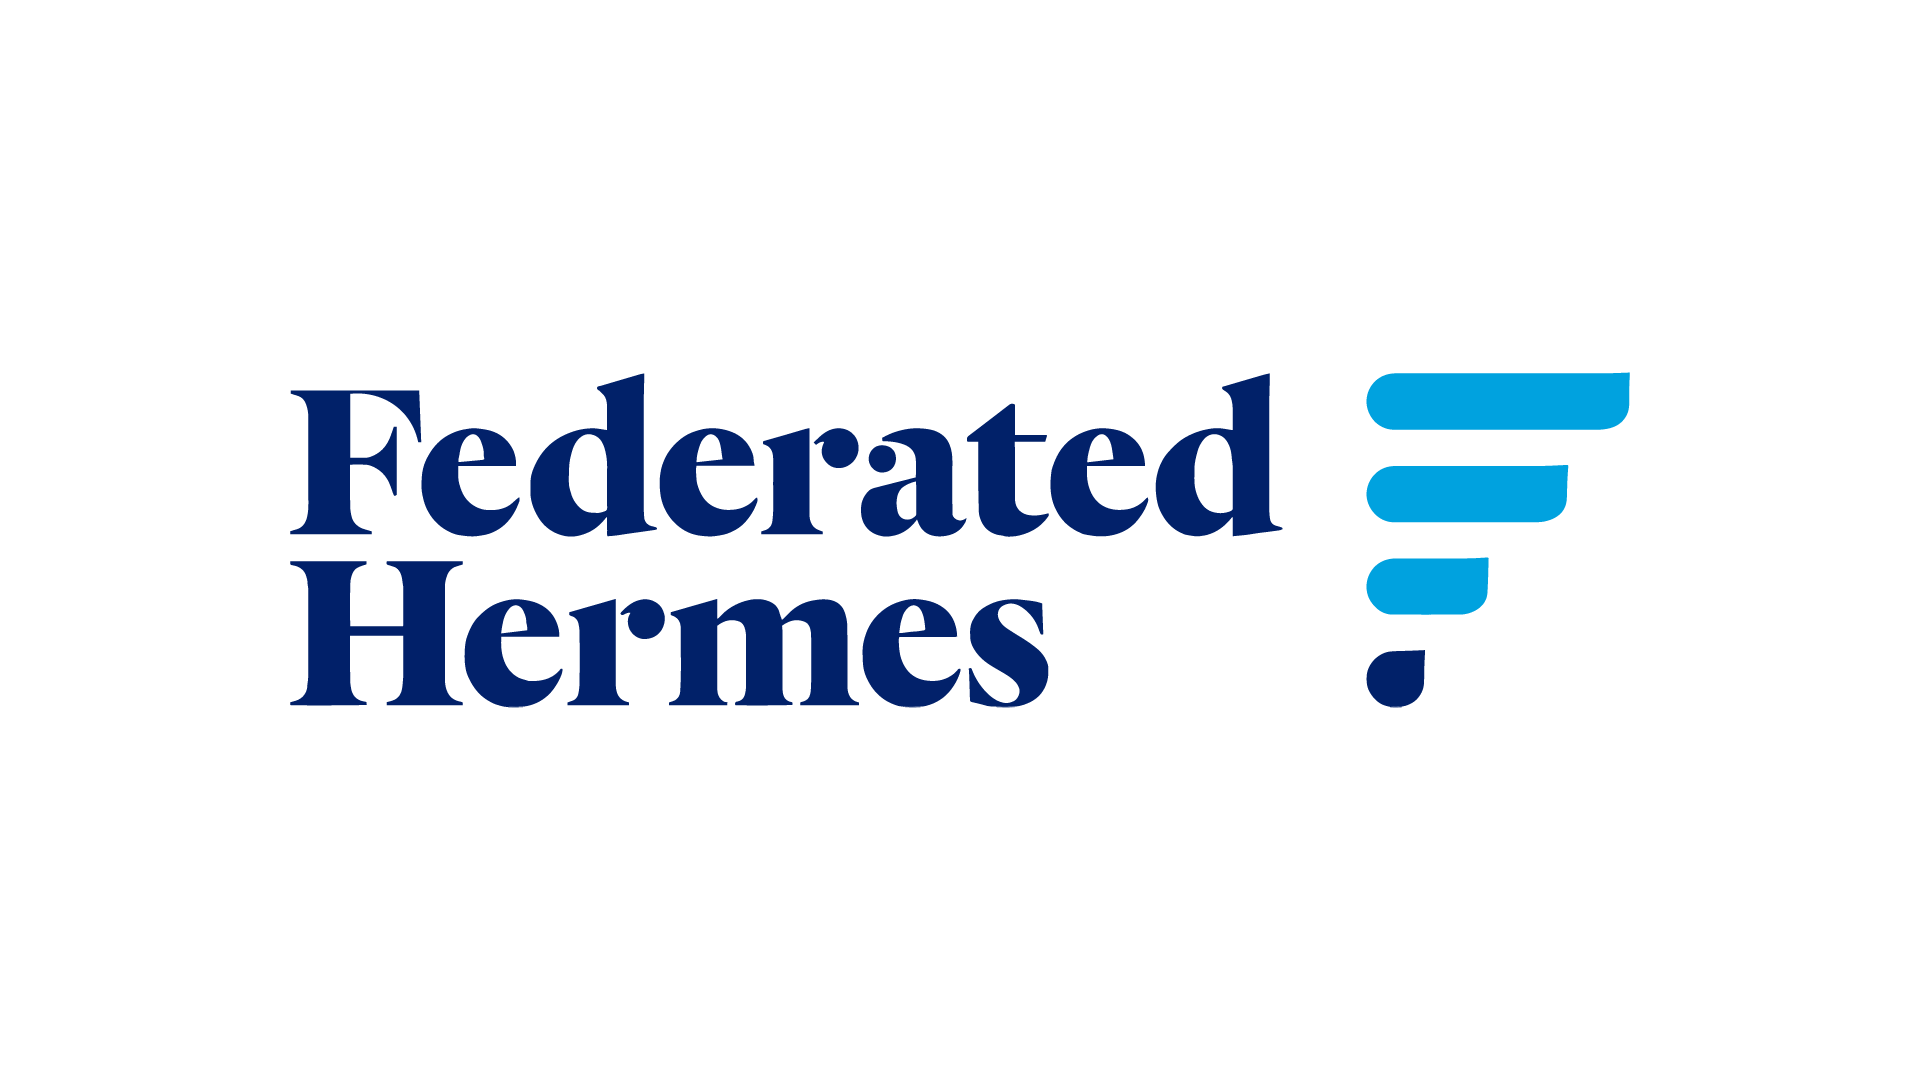 Federated Hermes, Inc. (NYSE:FHI) Seasonal Chart